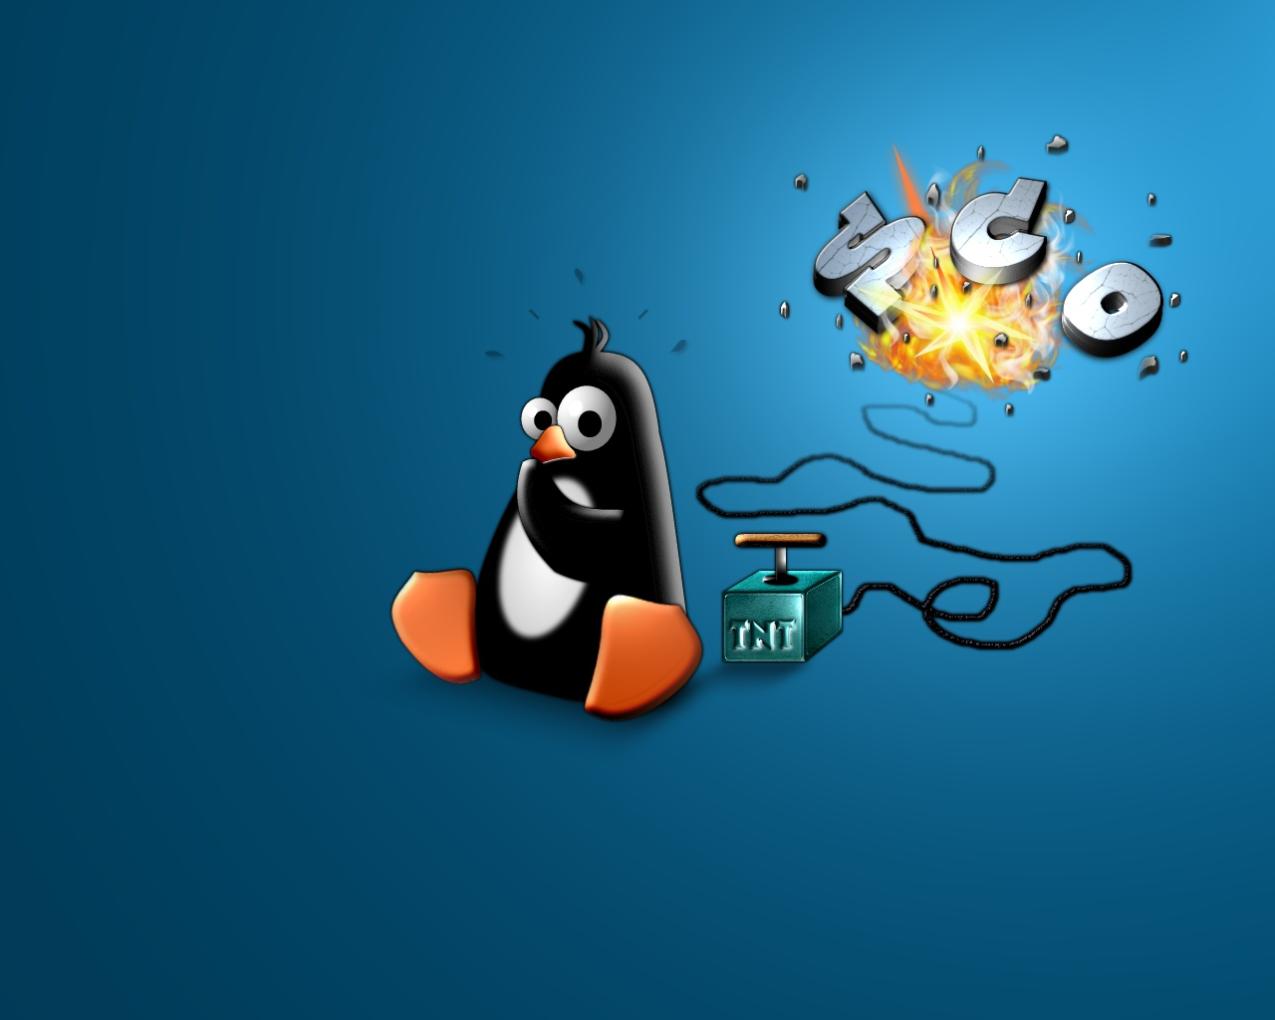 Quali sono gli errori più comuni della riga di comando di Linux e come posso risolverli?